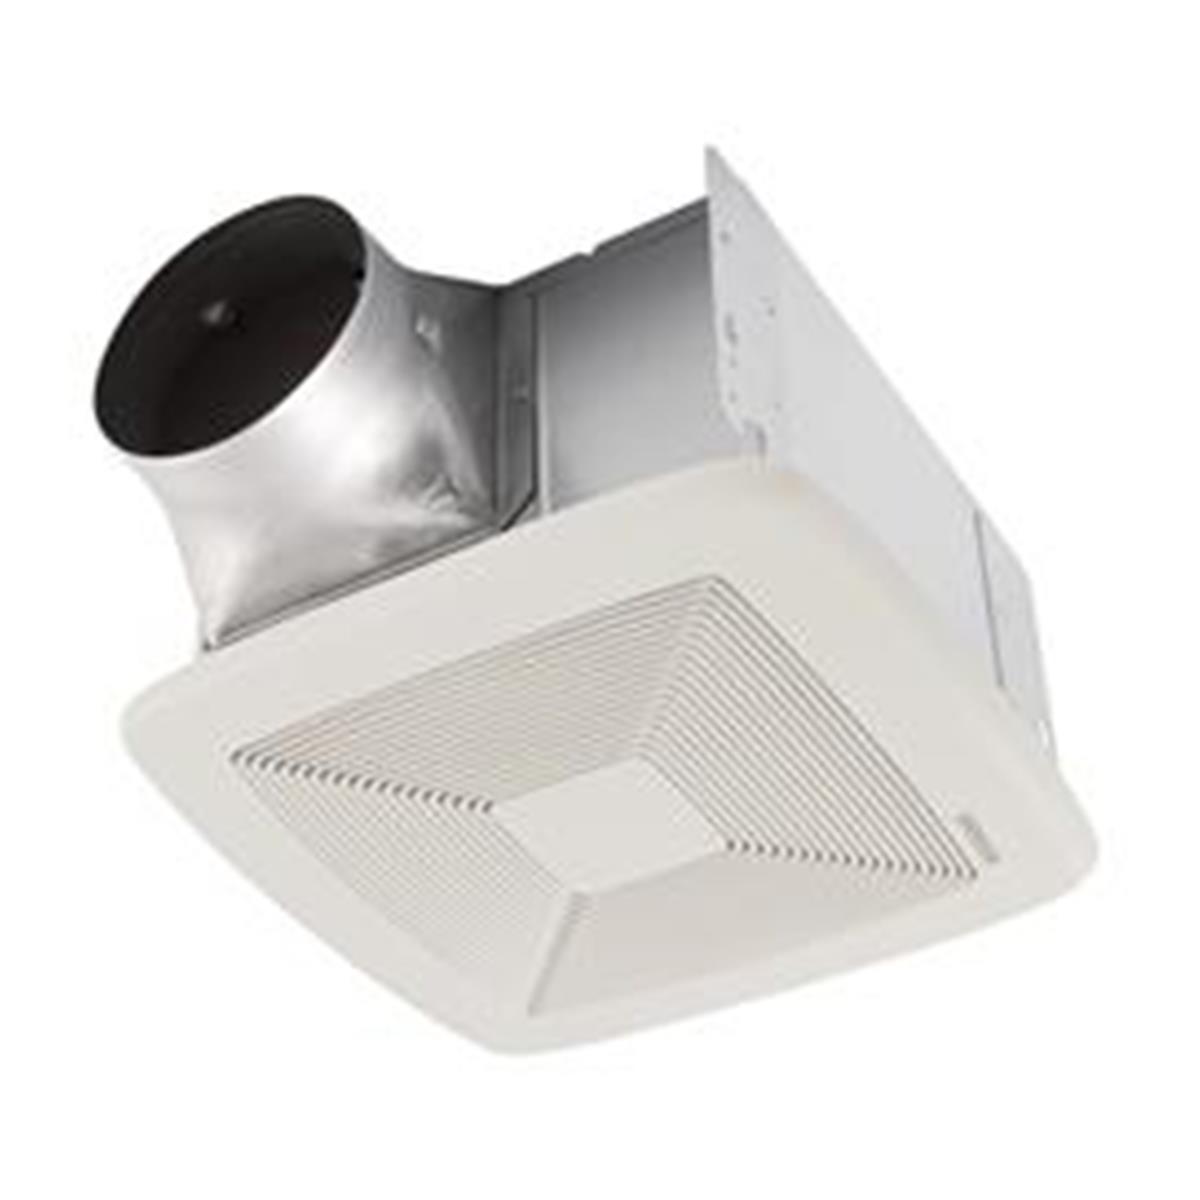 Picture of Broan QTXE150 Quiet Bath Fan Grille Energy Star, White - 150 CFM